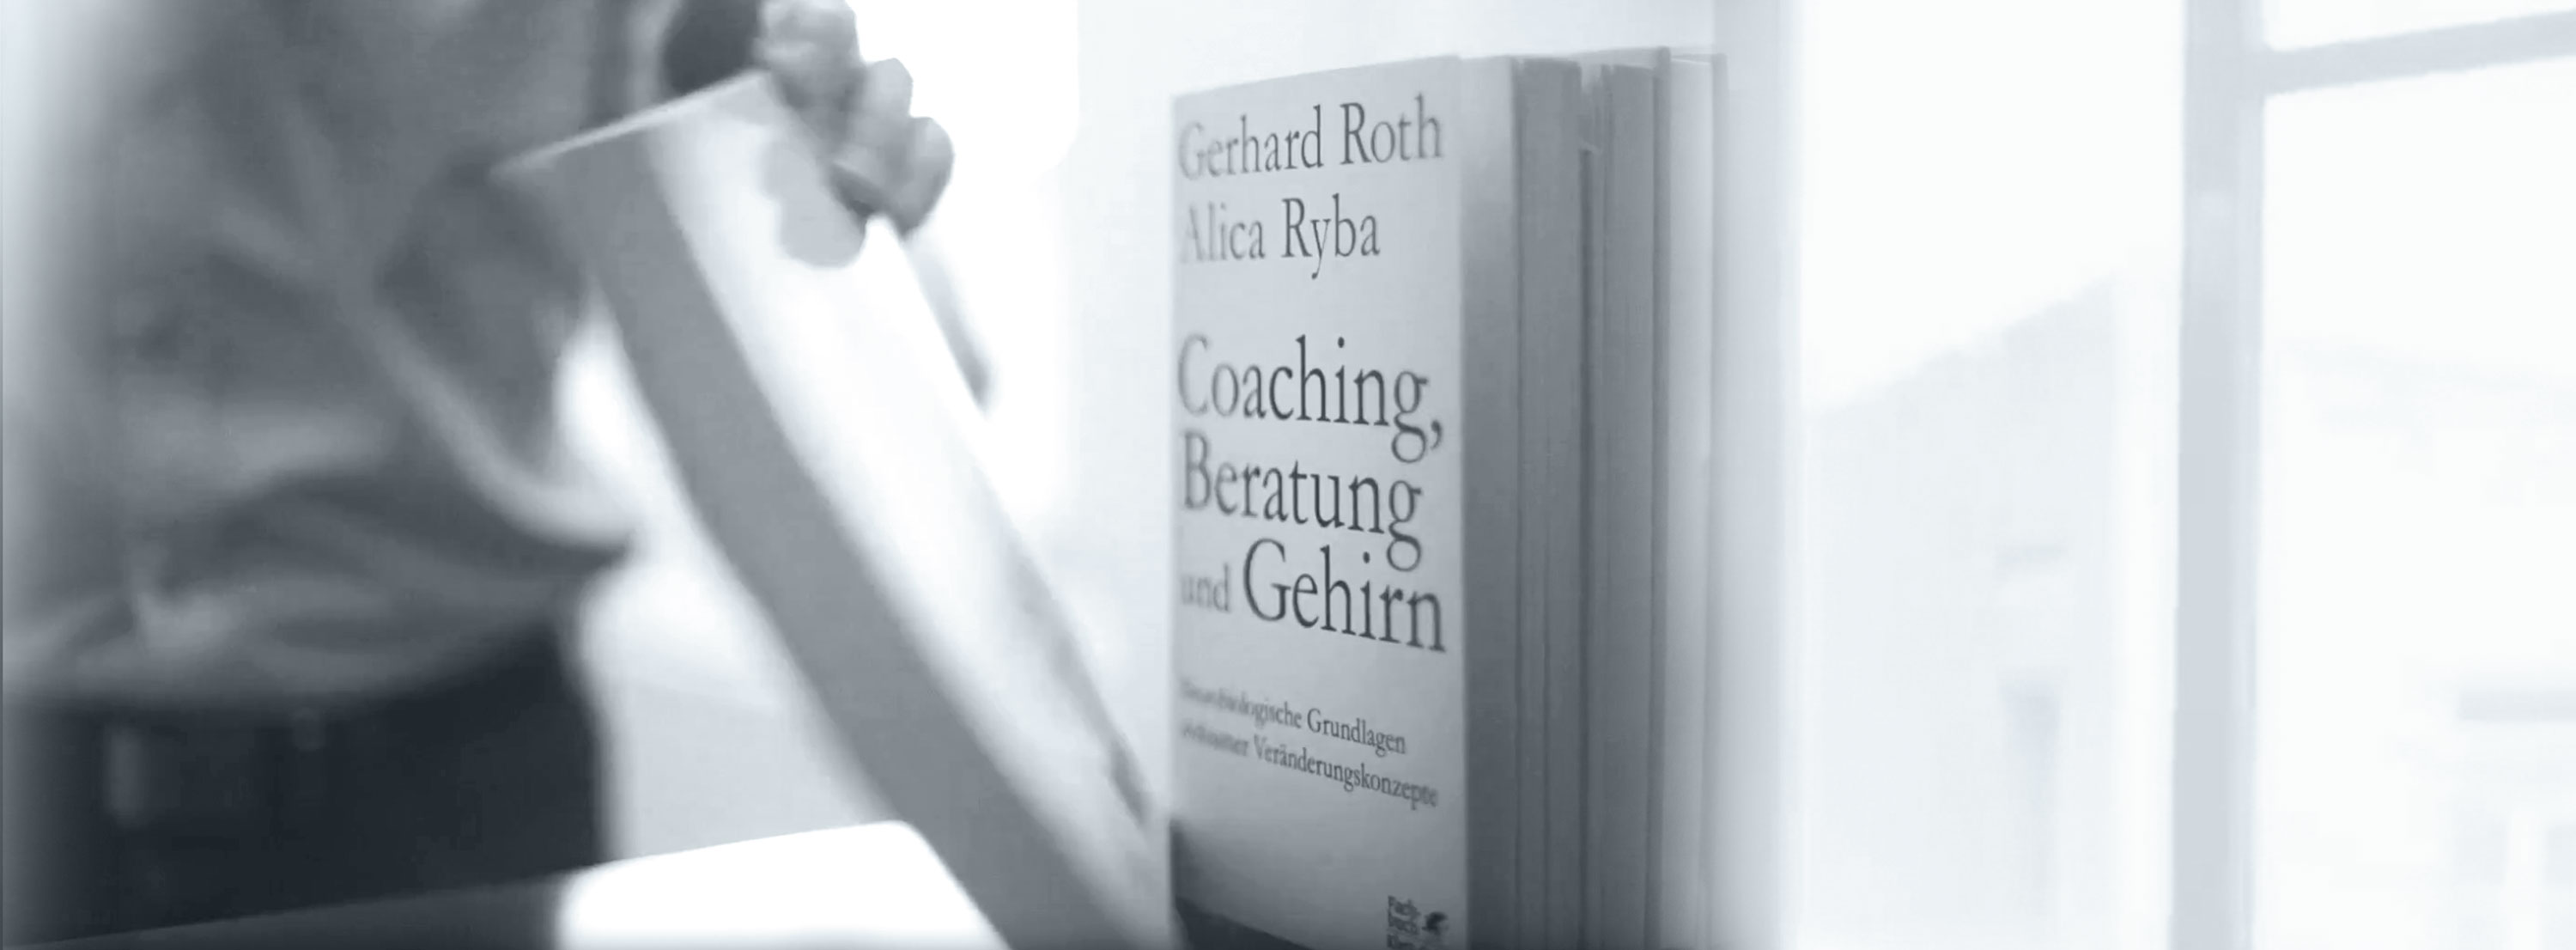 Business Coaching Ausbildung - Bücher